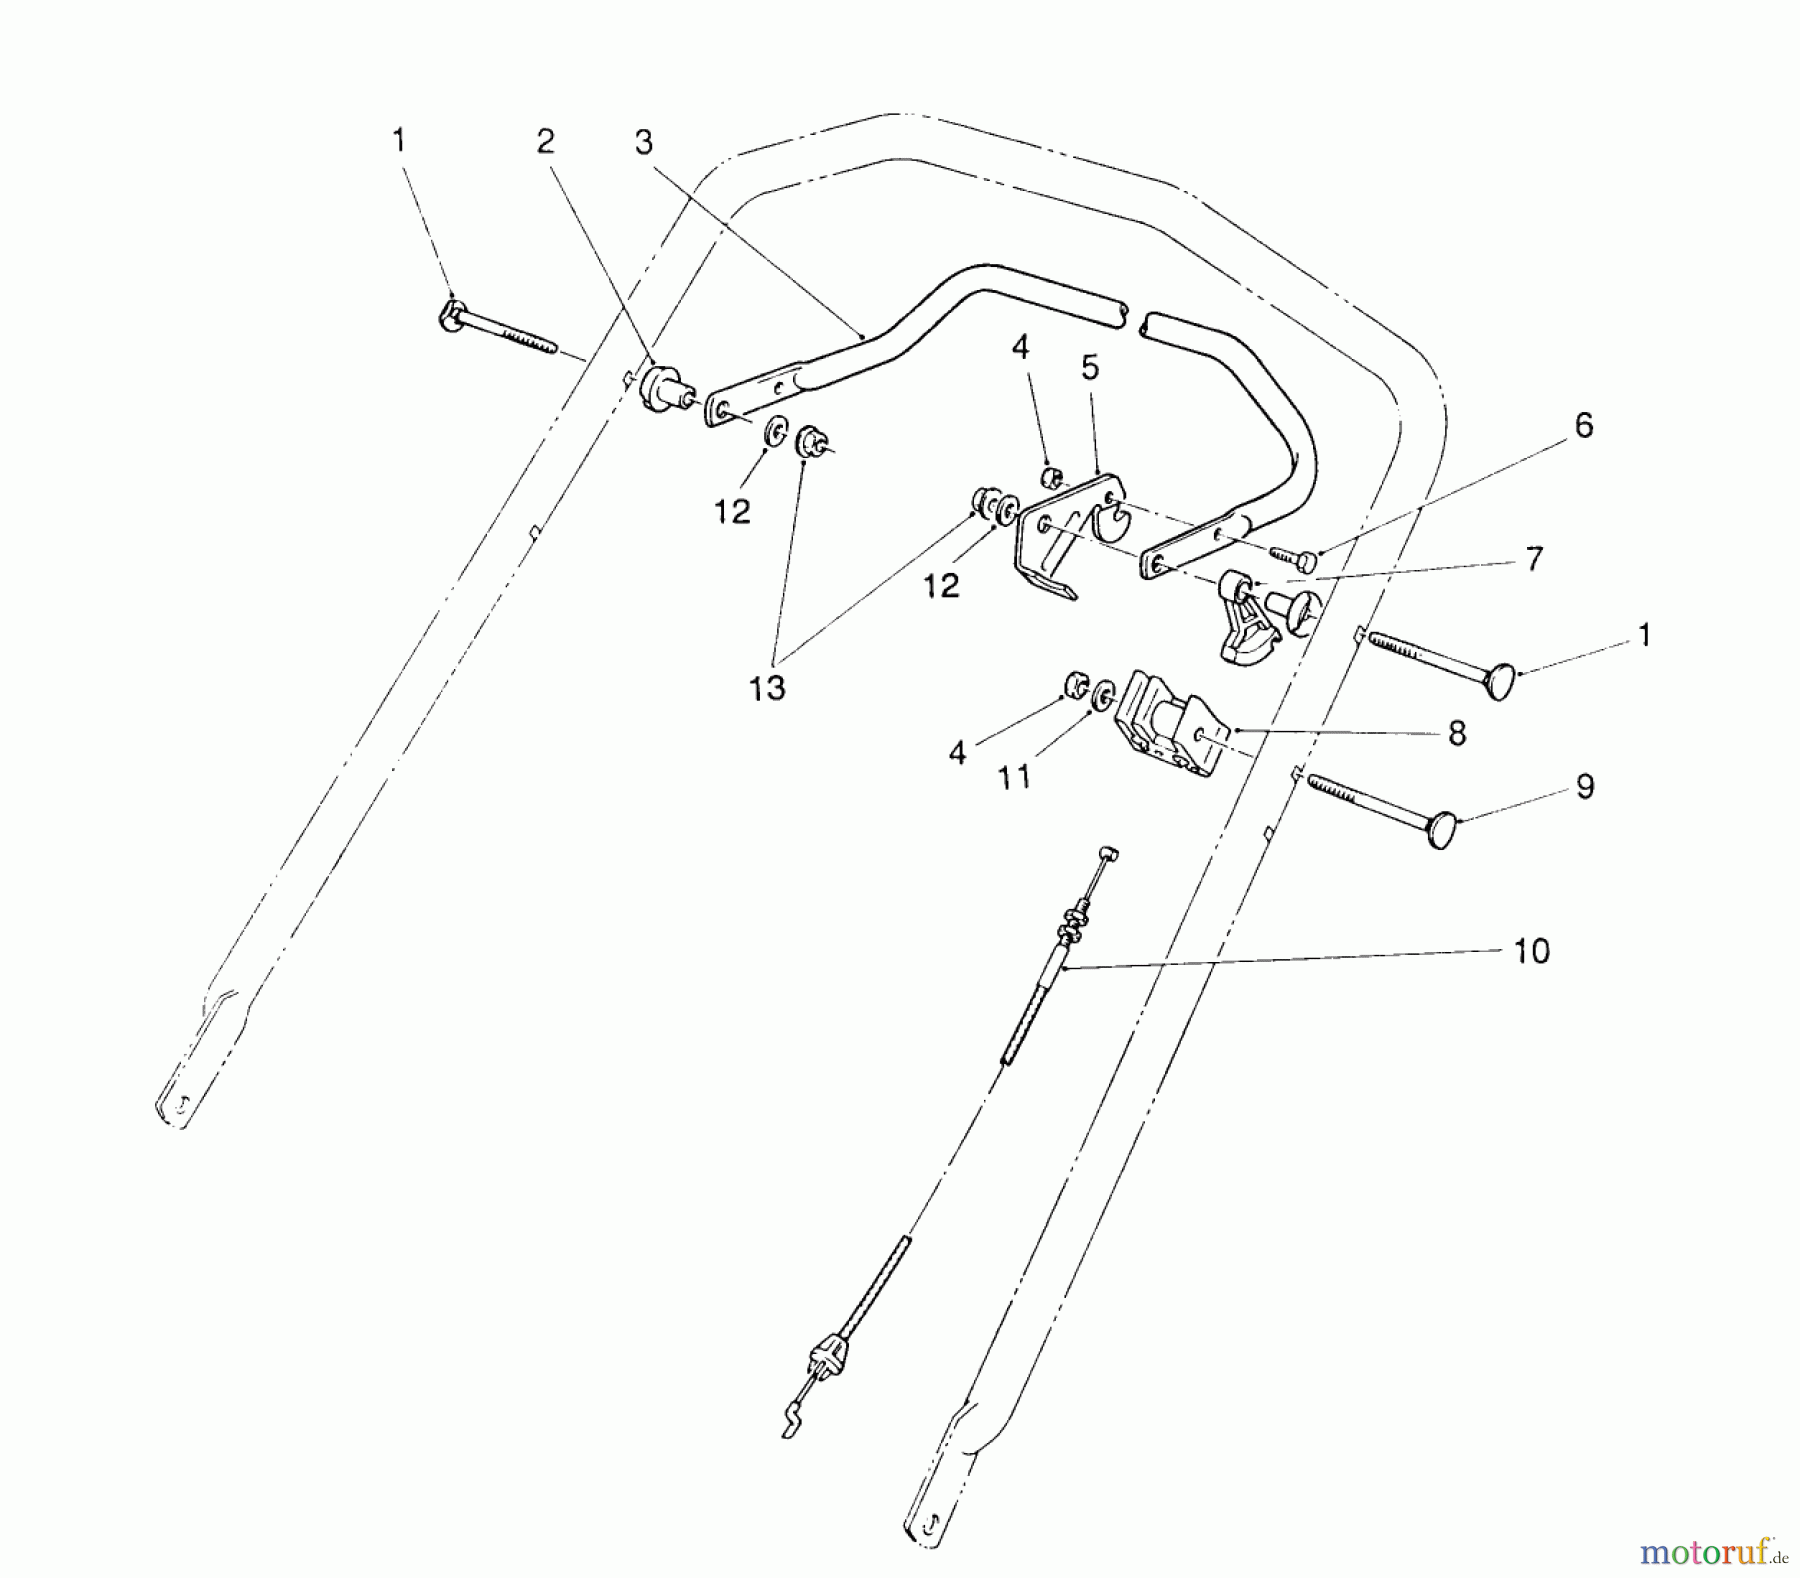  Toro Neu Mowers, Walk-Behind Seite 2 26620BG - Toro Lawnmower, 1990 (0009001-0999999) TRACTION CONTROL ASSEMBLY